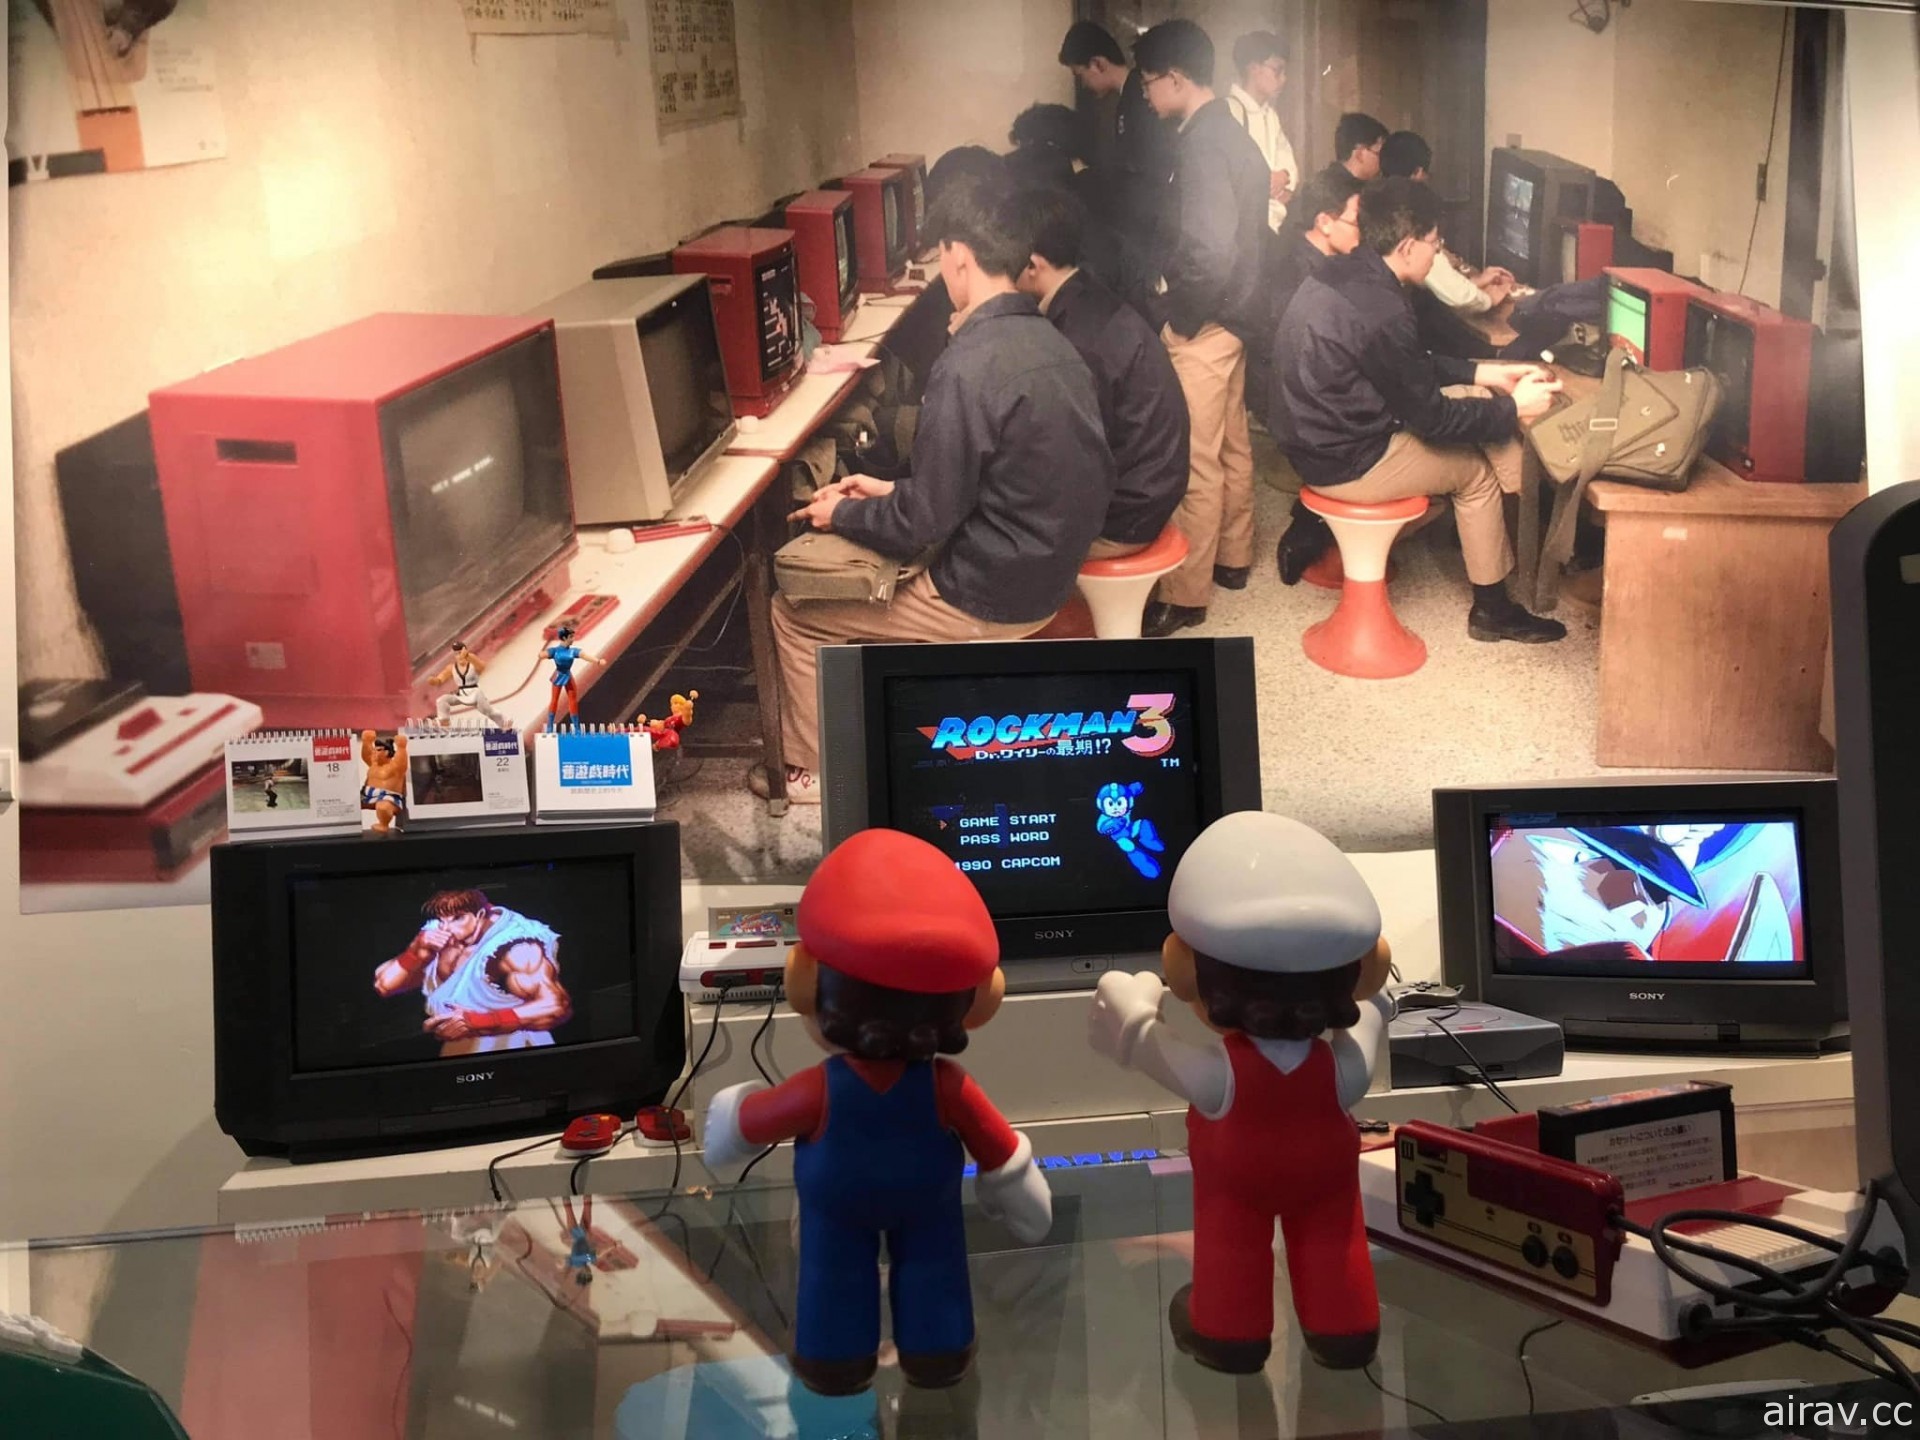 復刻懷舊電玩小賣店「華泰行」現身台北光華商圈 重溫童年美好時光